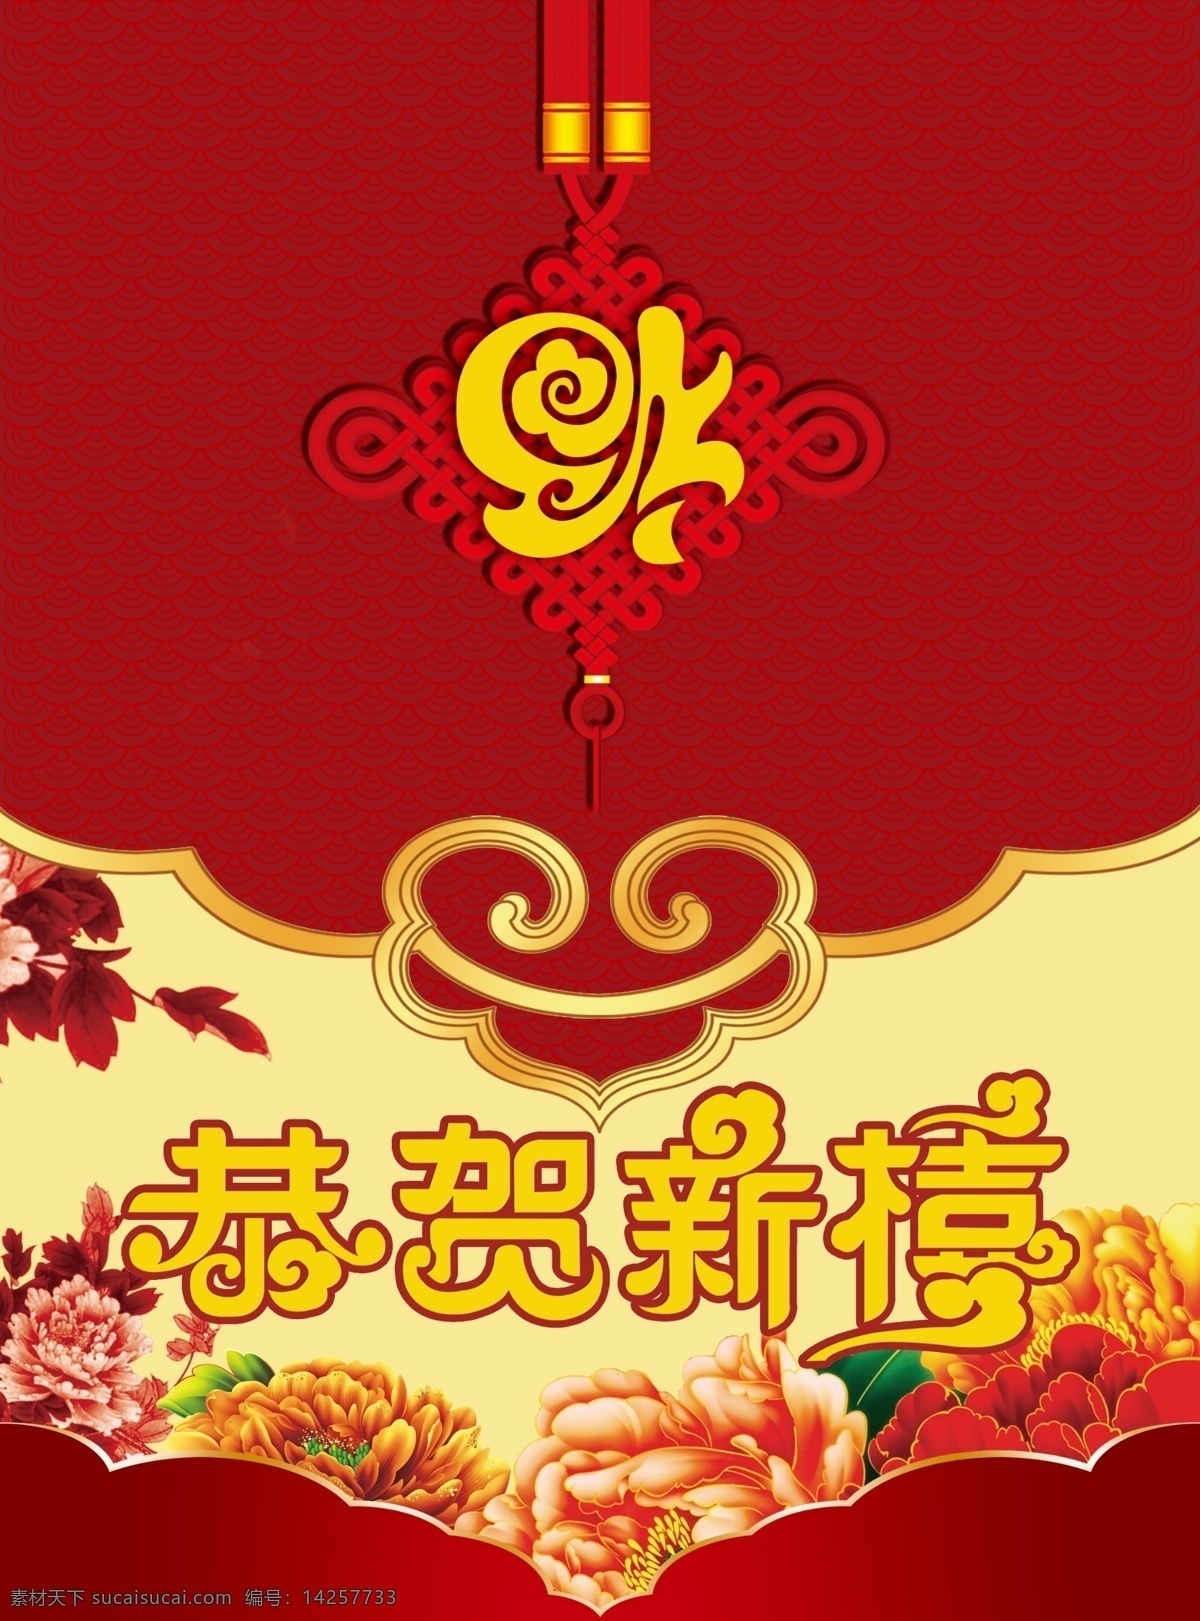 恭贺新禧 新年贺卡 喜庆节日 红色背景 节日素材 花纹背景 中国结 福字